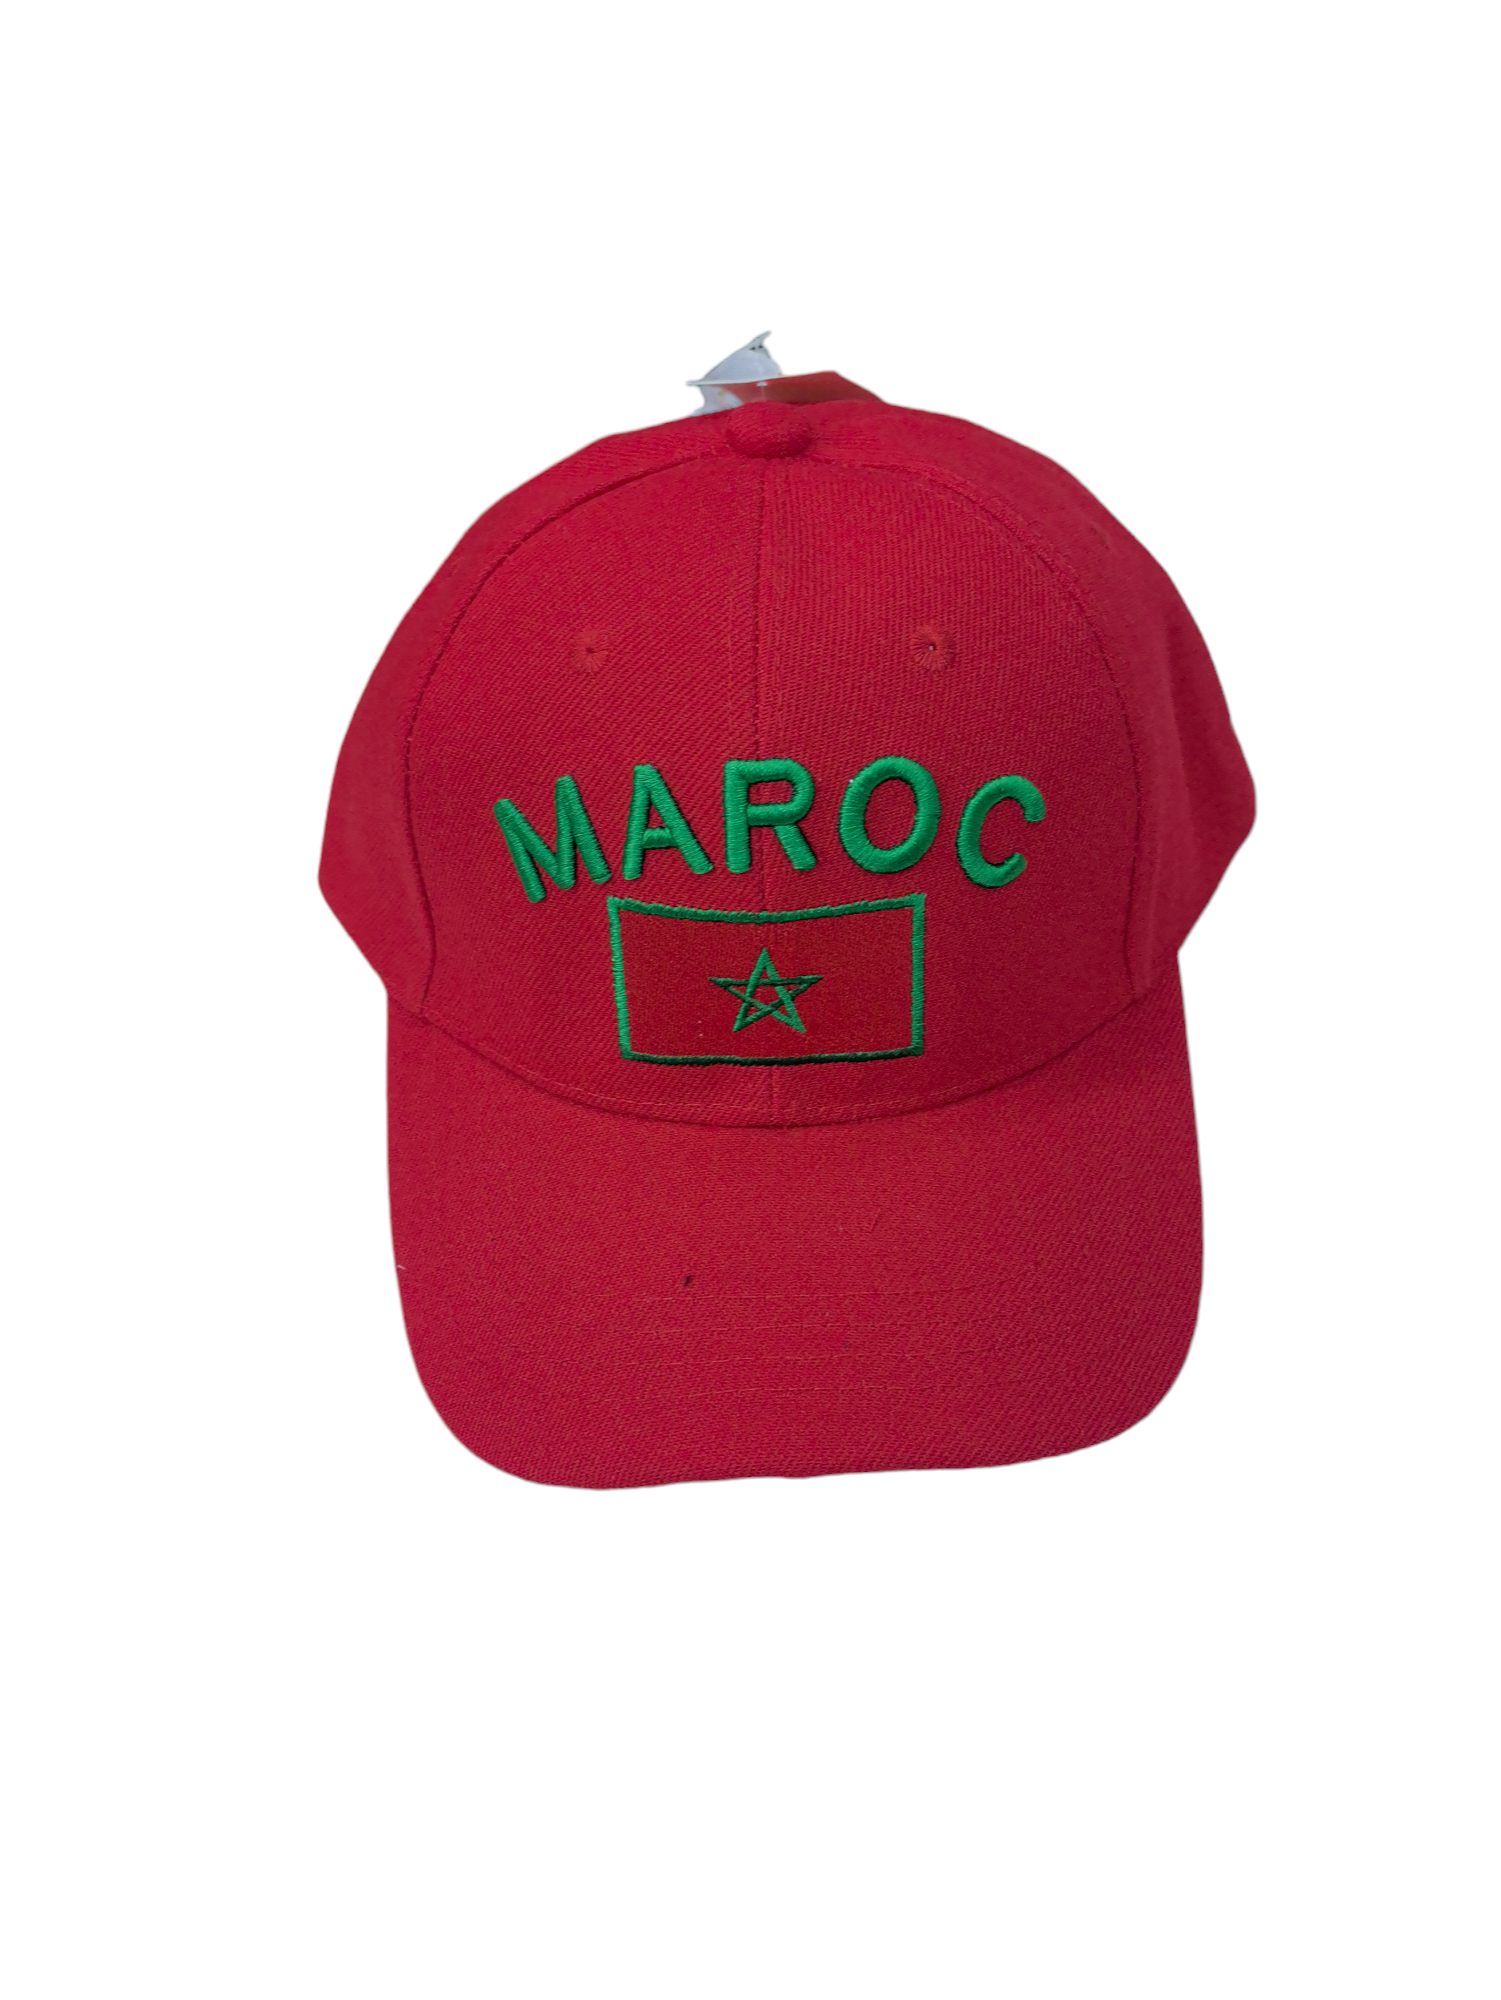 Morocco caps (x6)